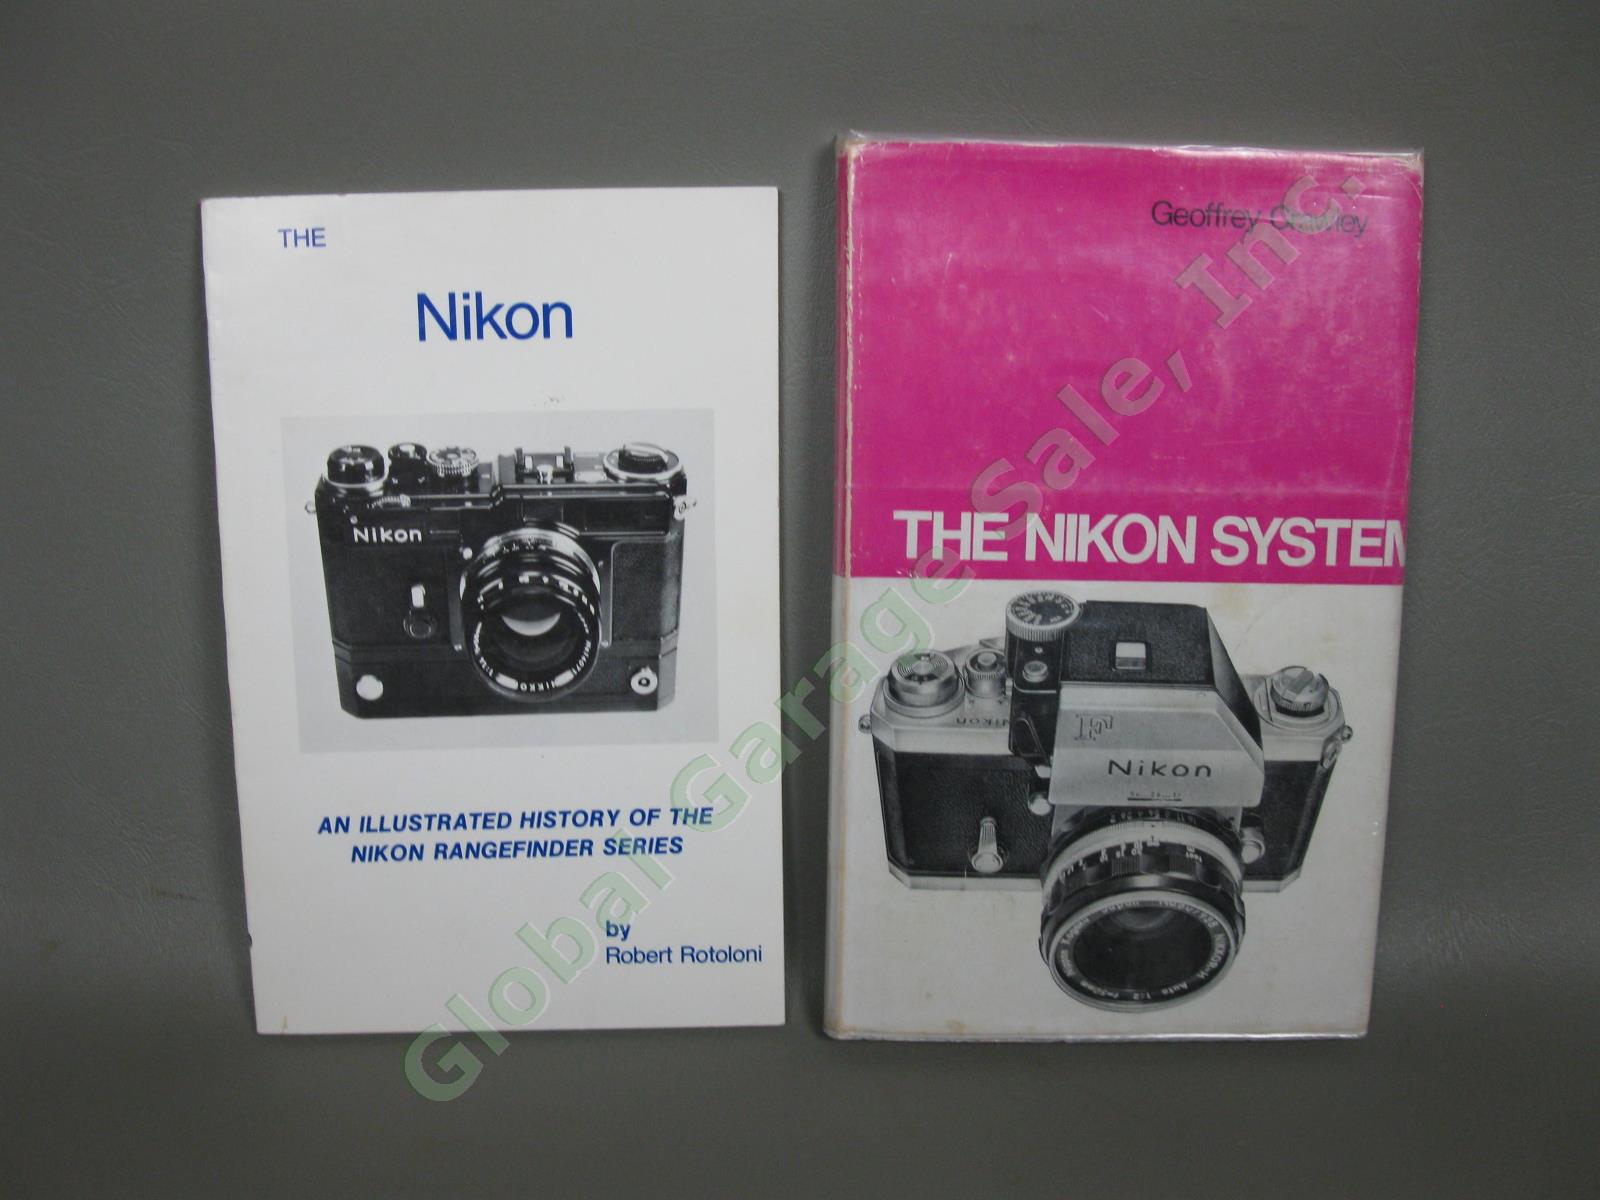 VTG Nikon Film Camera Books Manuals & Rangefinder Illustrated History SIGNED NR 4